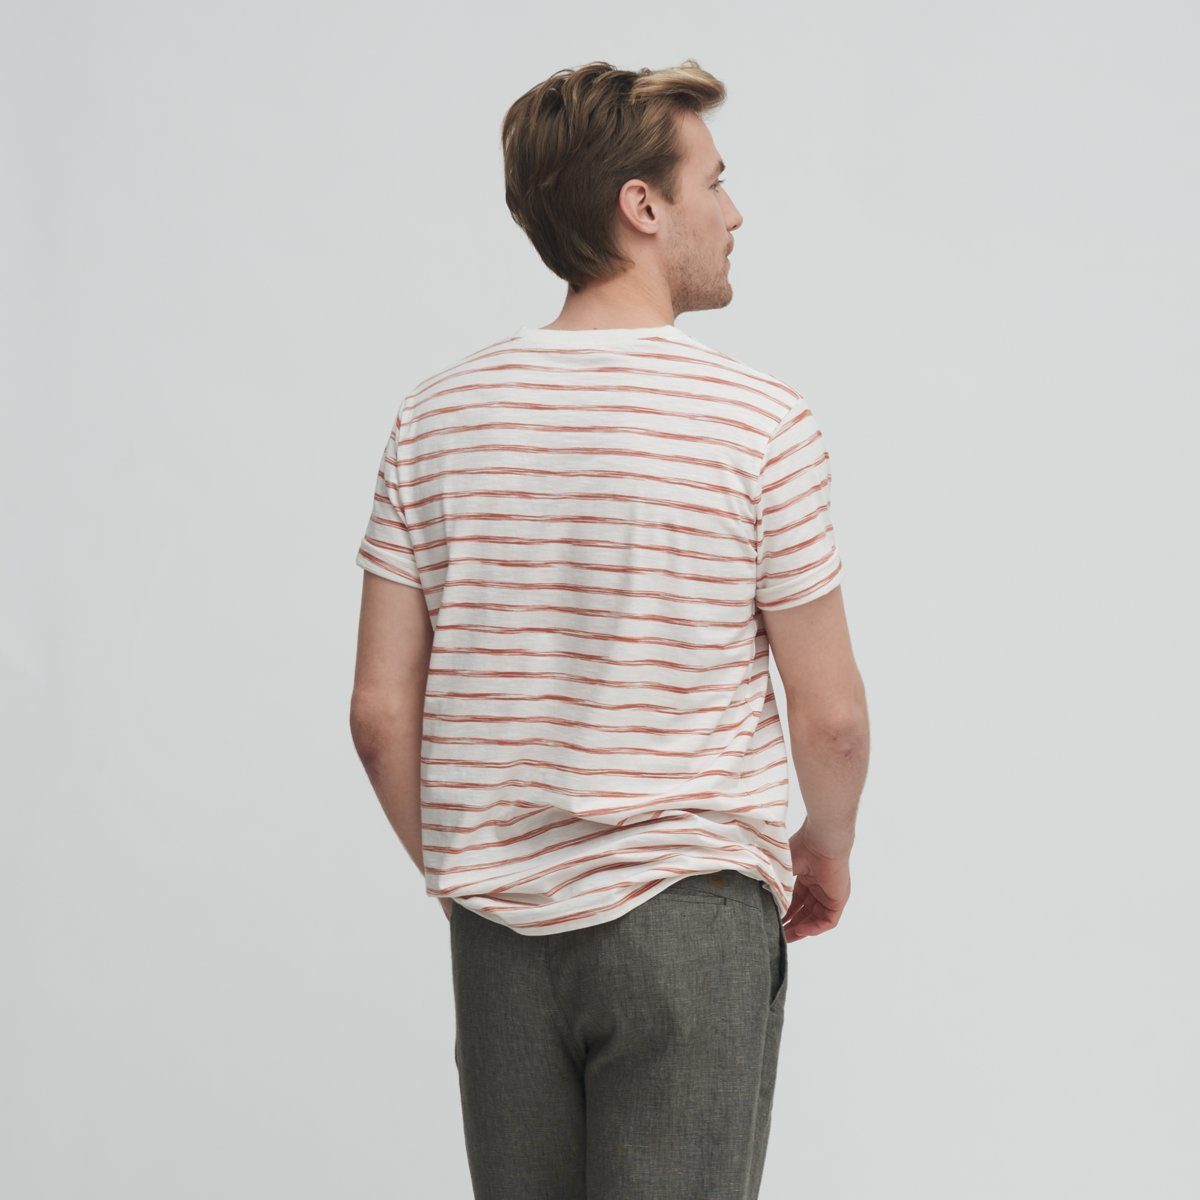 weichem aus besonders Sienna/Offwhite CRAFTS Luftiges ODIN T-Shirt Raw Slub-Garn Design LIVING